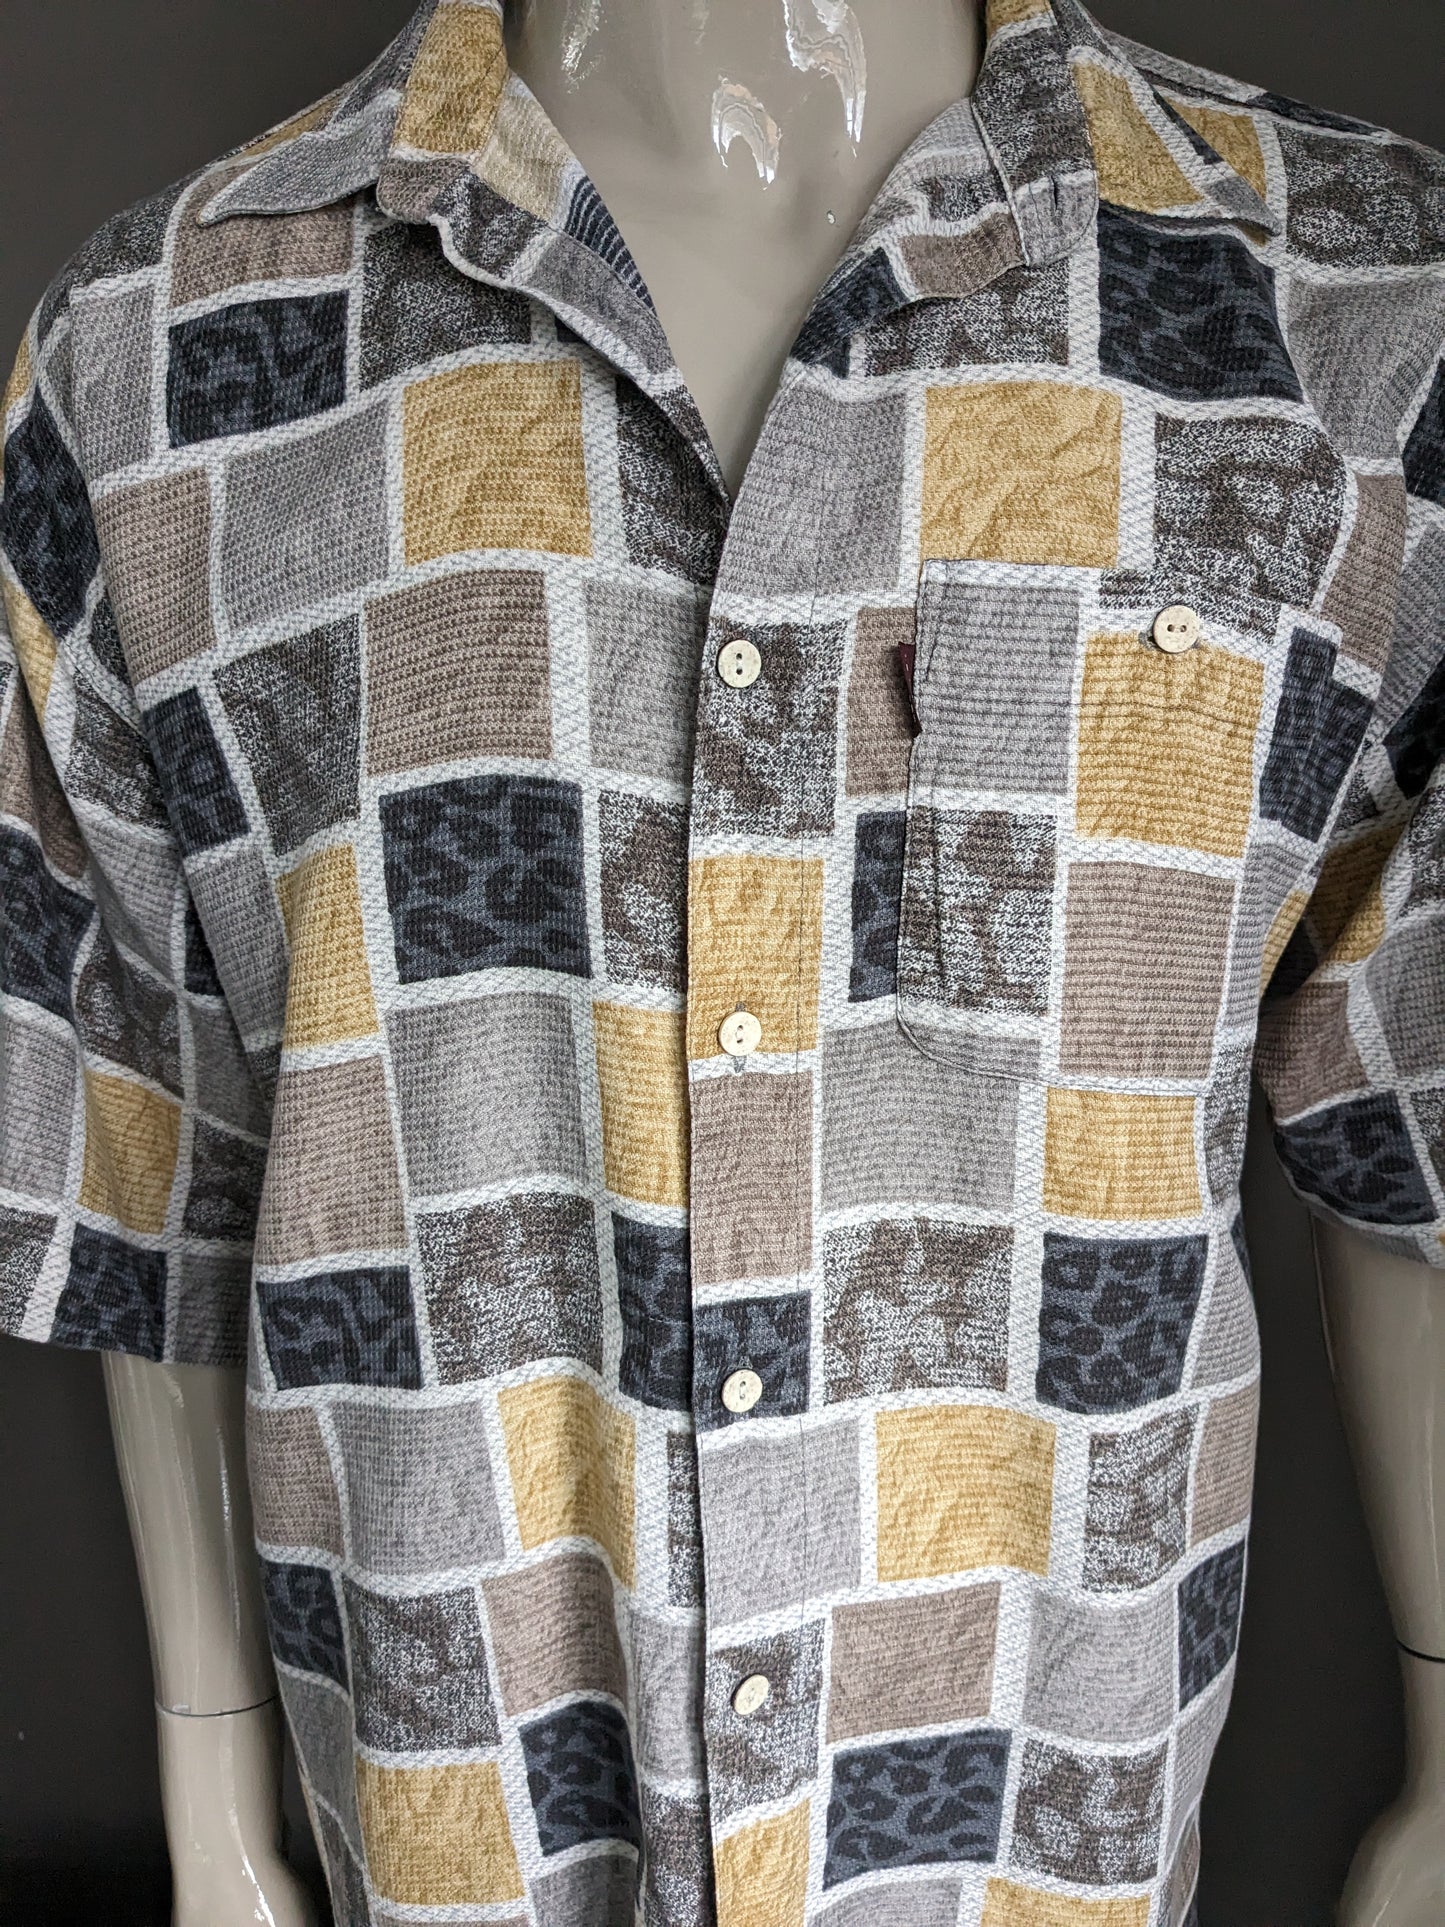 Camisa de temporadas vintage manga corta. Estampado gris amarillo marrón. Tamaño 2xl / xxl.